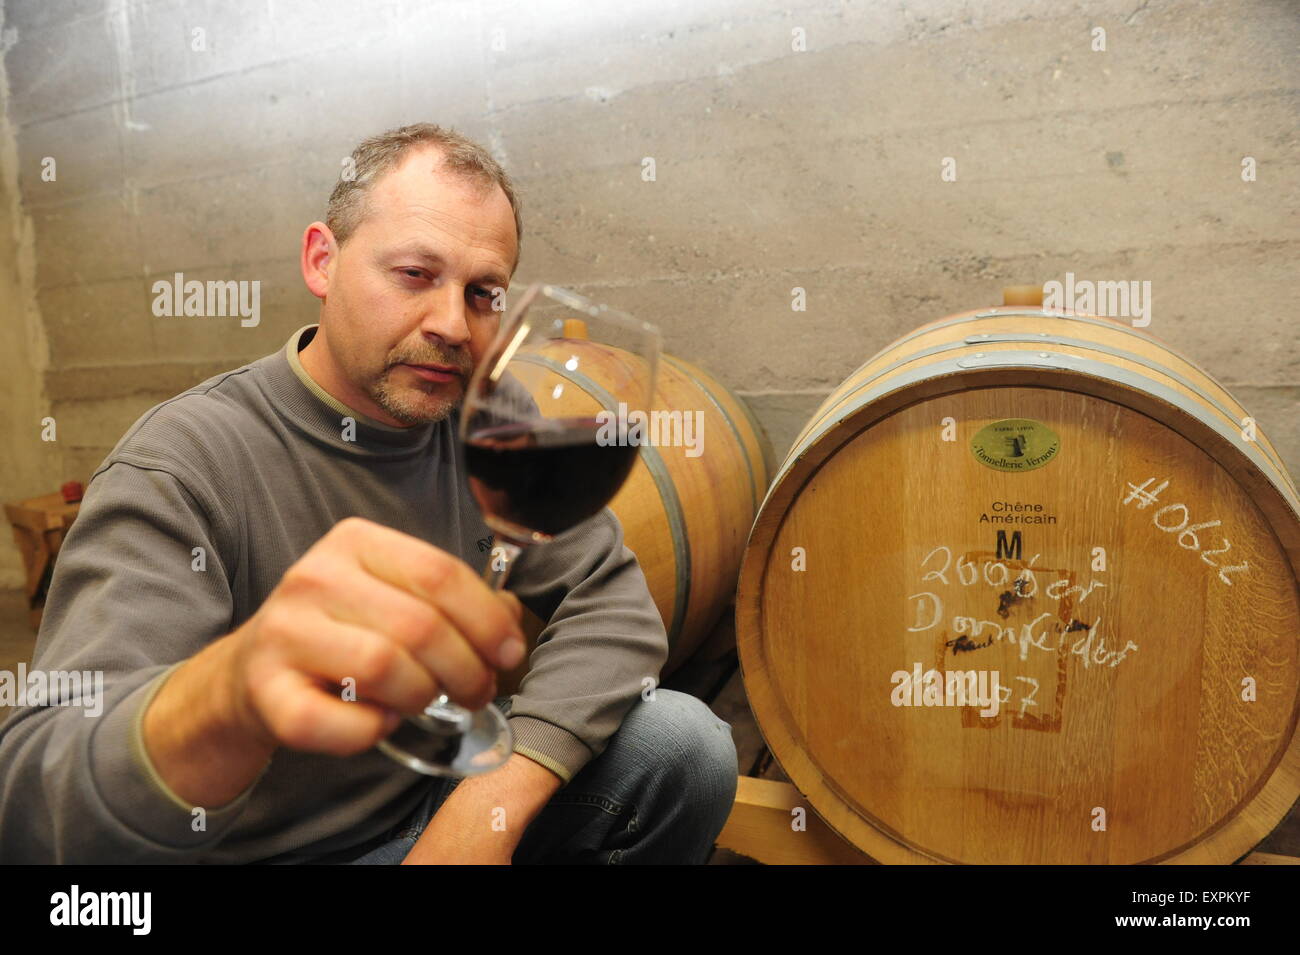 Worm, Germania - 20 agosto 2009 - produttore di vini in cantina esamina il nuovo vino rosso con barili in background Foto Stock